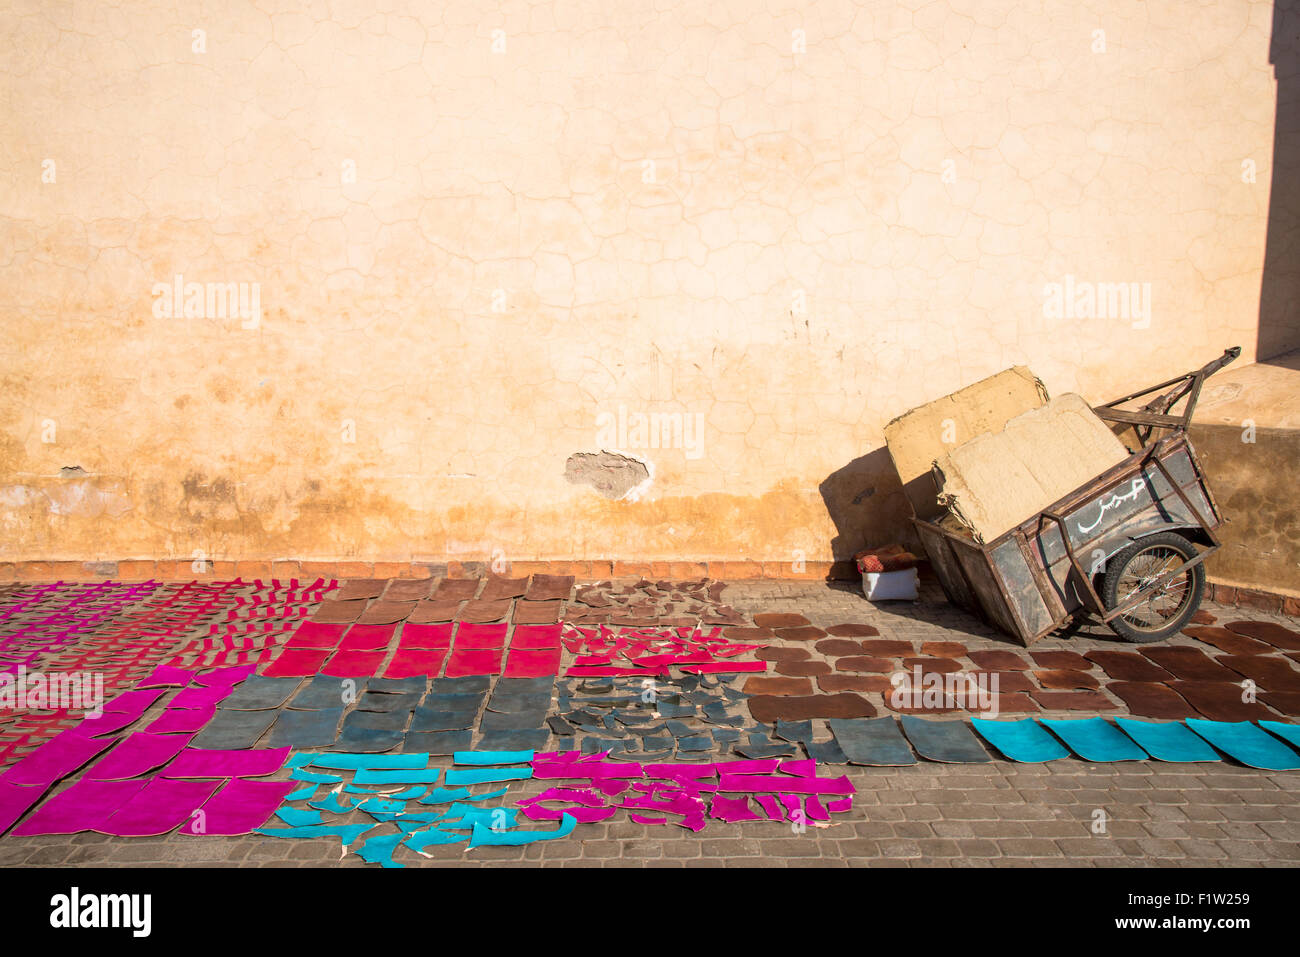 Tagliare e colorati pezzi di cuoio che stabilisce nel sole per asciugare nella medina di Marrakech Maroc Foto Stock